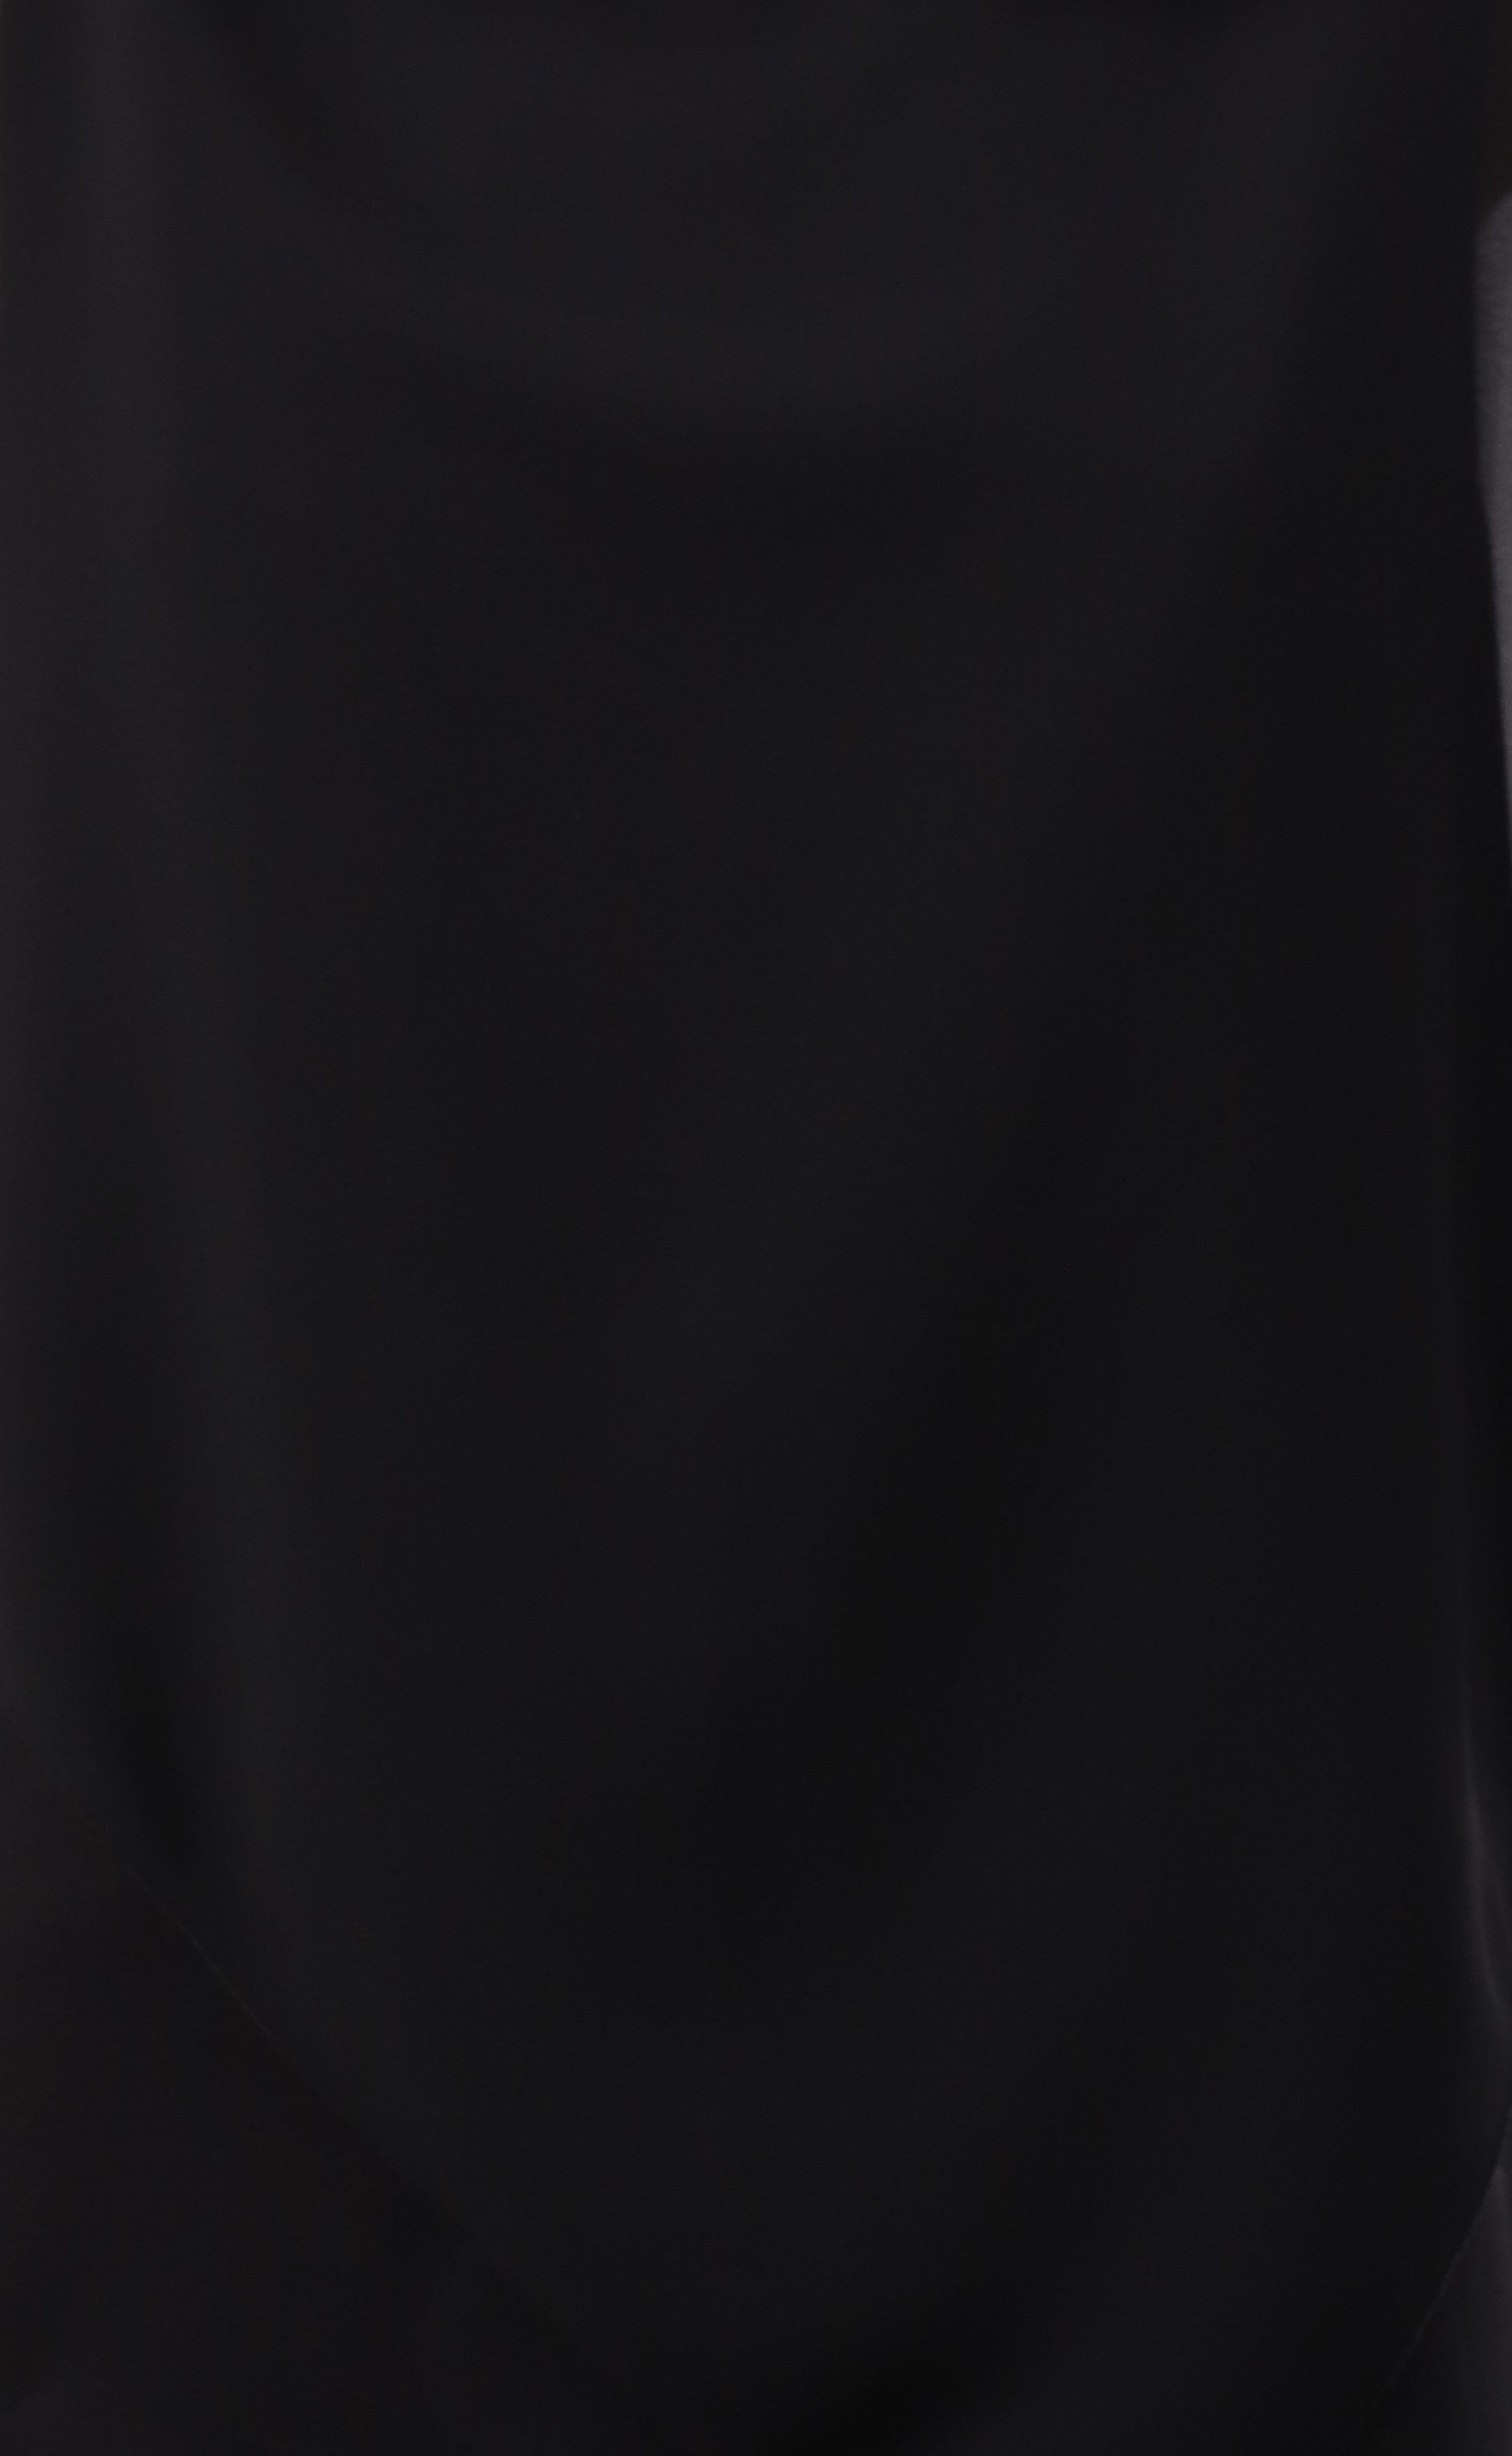 Chiffonbluse Blusenshirt malito Einheitsgröße more schwarz geschnitten fashion asymmetrisch Schlupfbluse than 10732